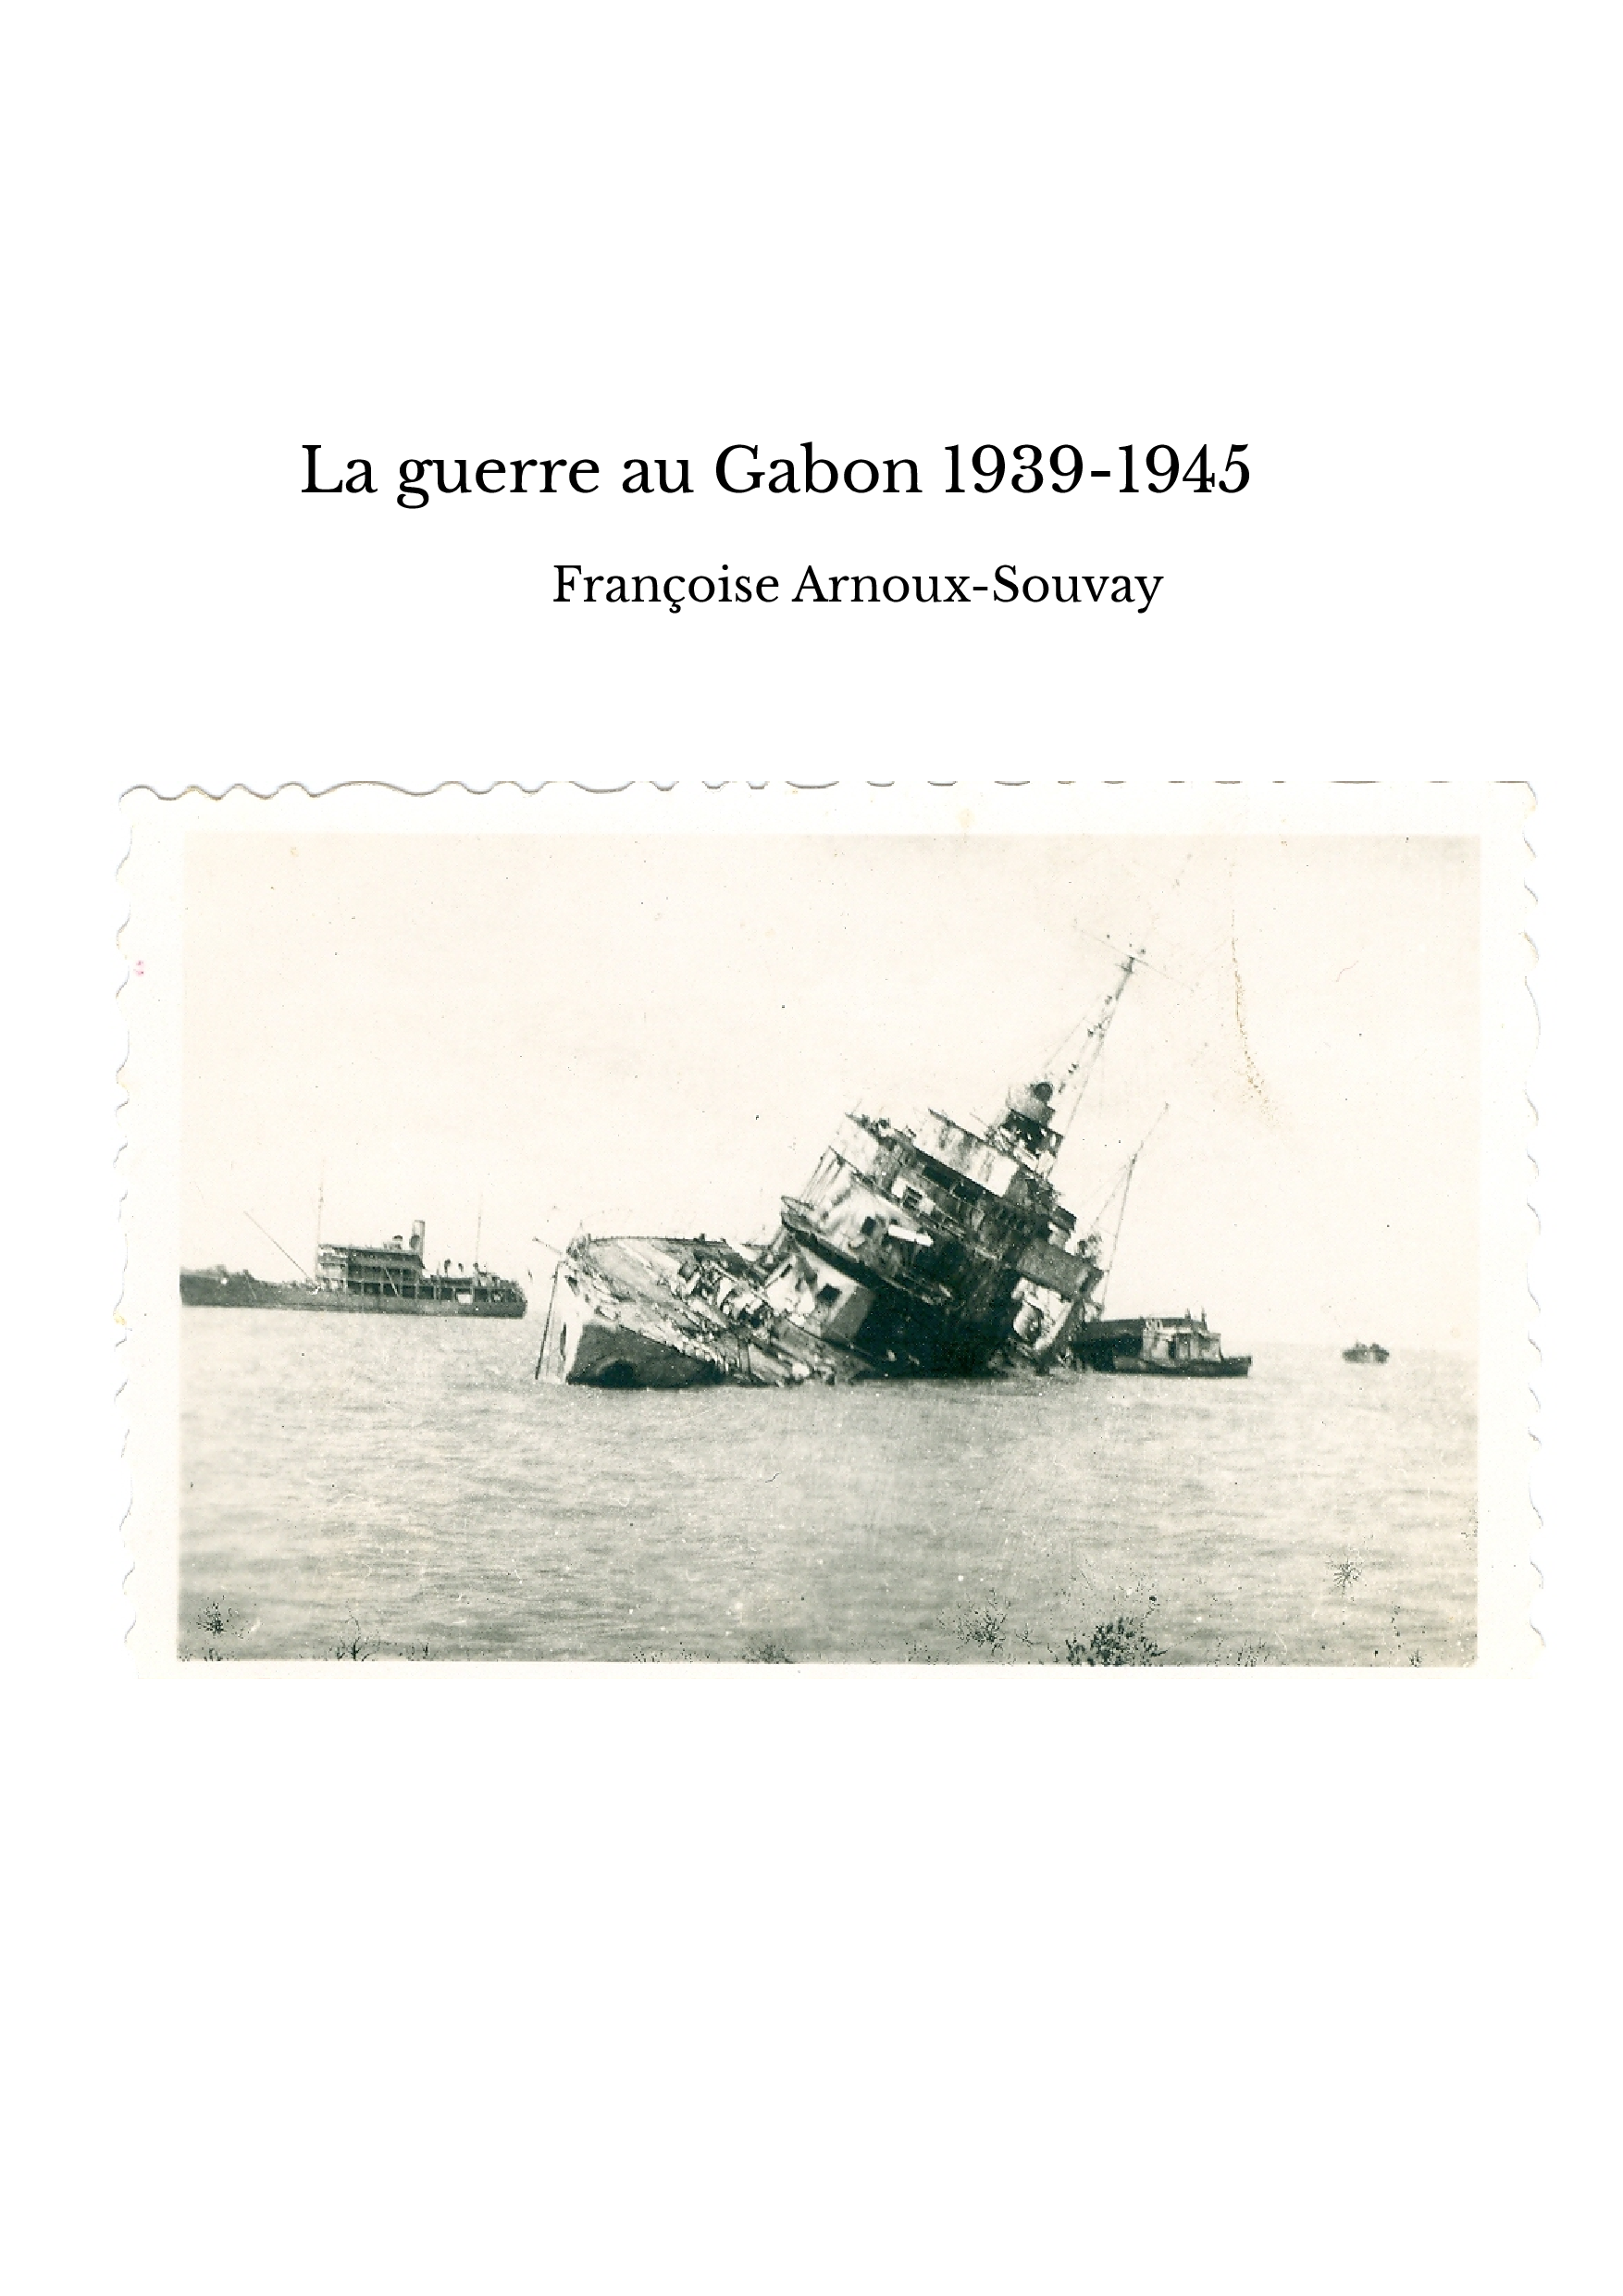  La guerre au Gabon 1939-1945 